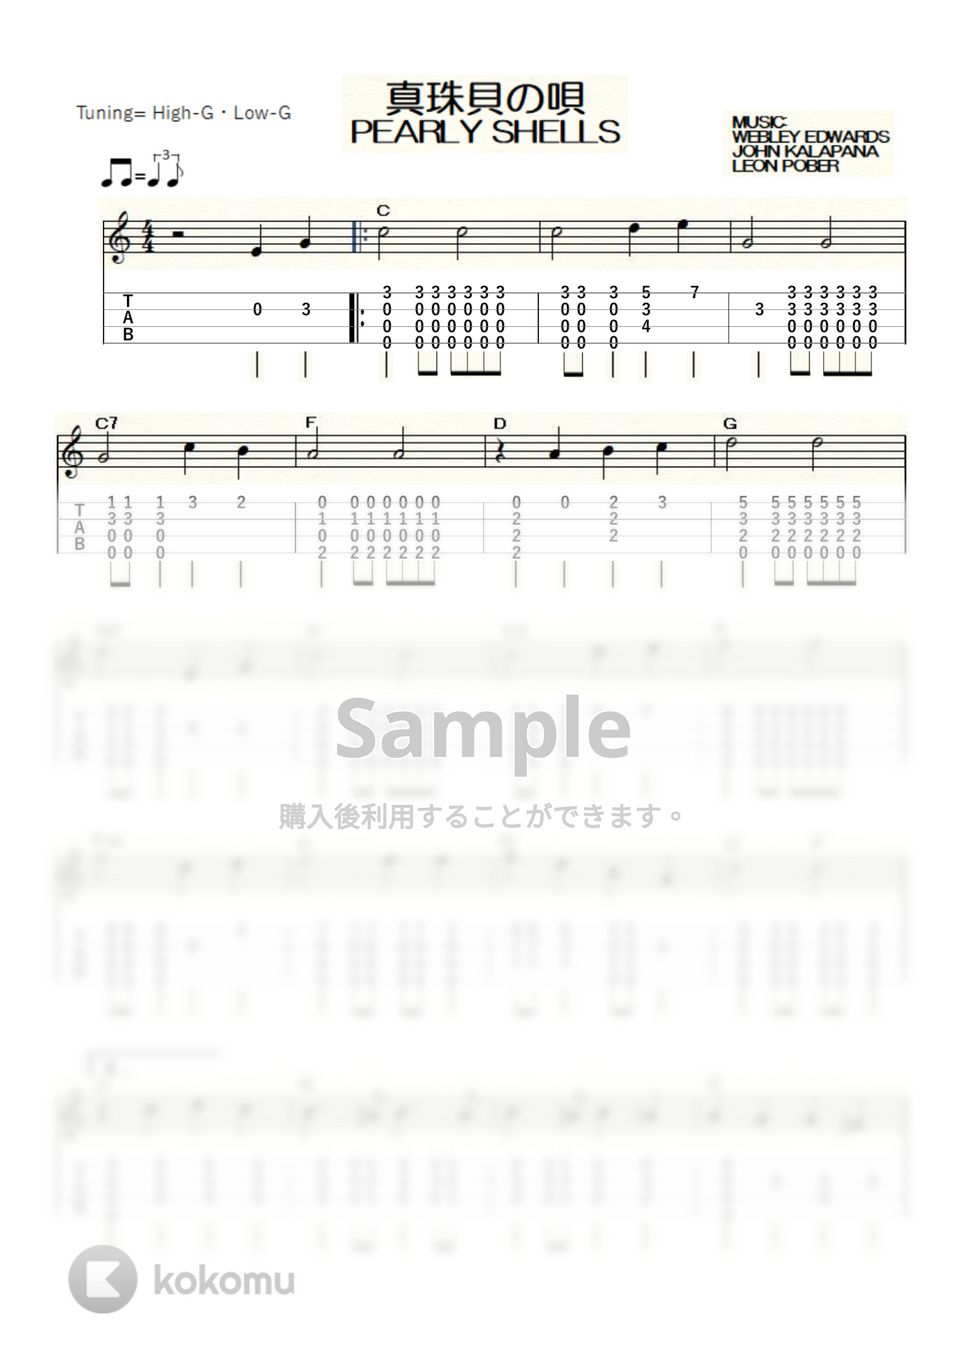 ハワイアン - 真珠貝の唄～PEARLY SHELLS～ (ｳｸﾚﾚｿﾛ / High-G,Low-G / 中級) by ukulelepapa